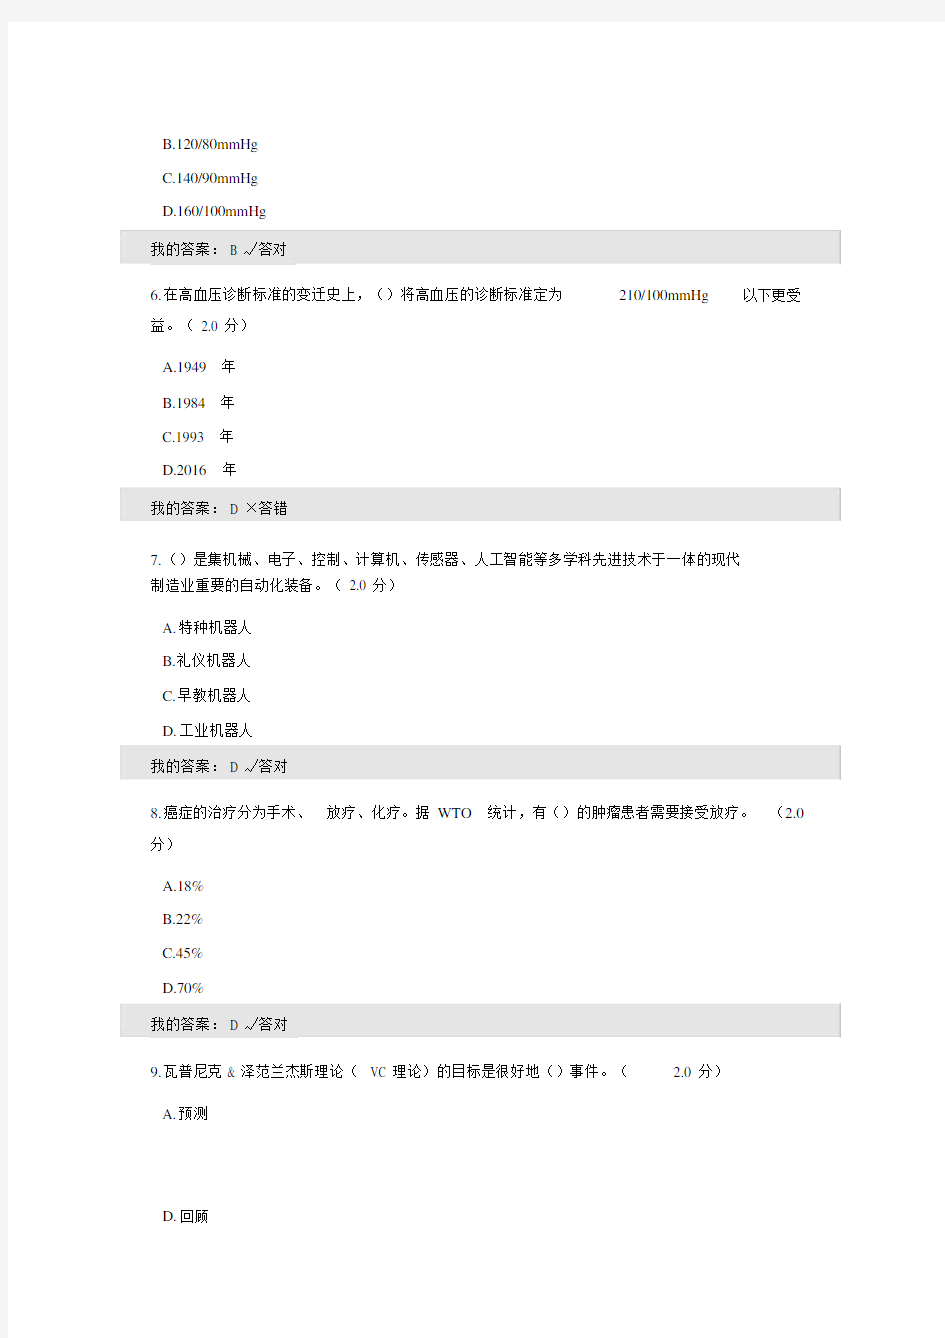 2019年四川省专业技术人员公需科目试题答案